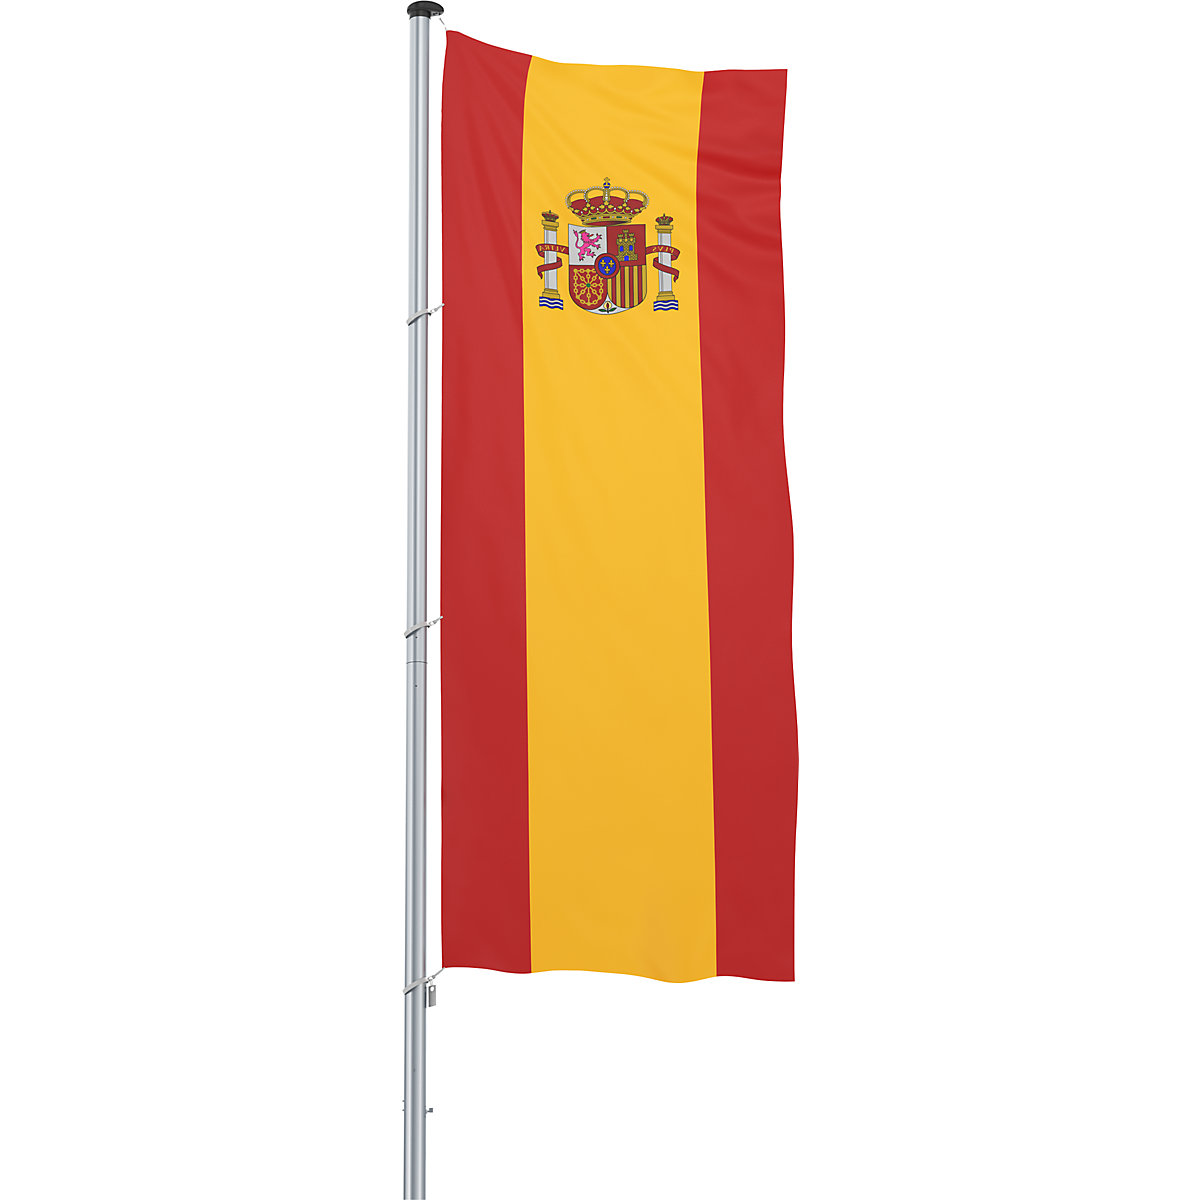 Hijsvlag/landvlag – Mannus, formaat 1,2 x 3 m, Spanje-13